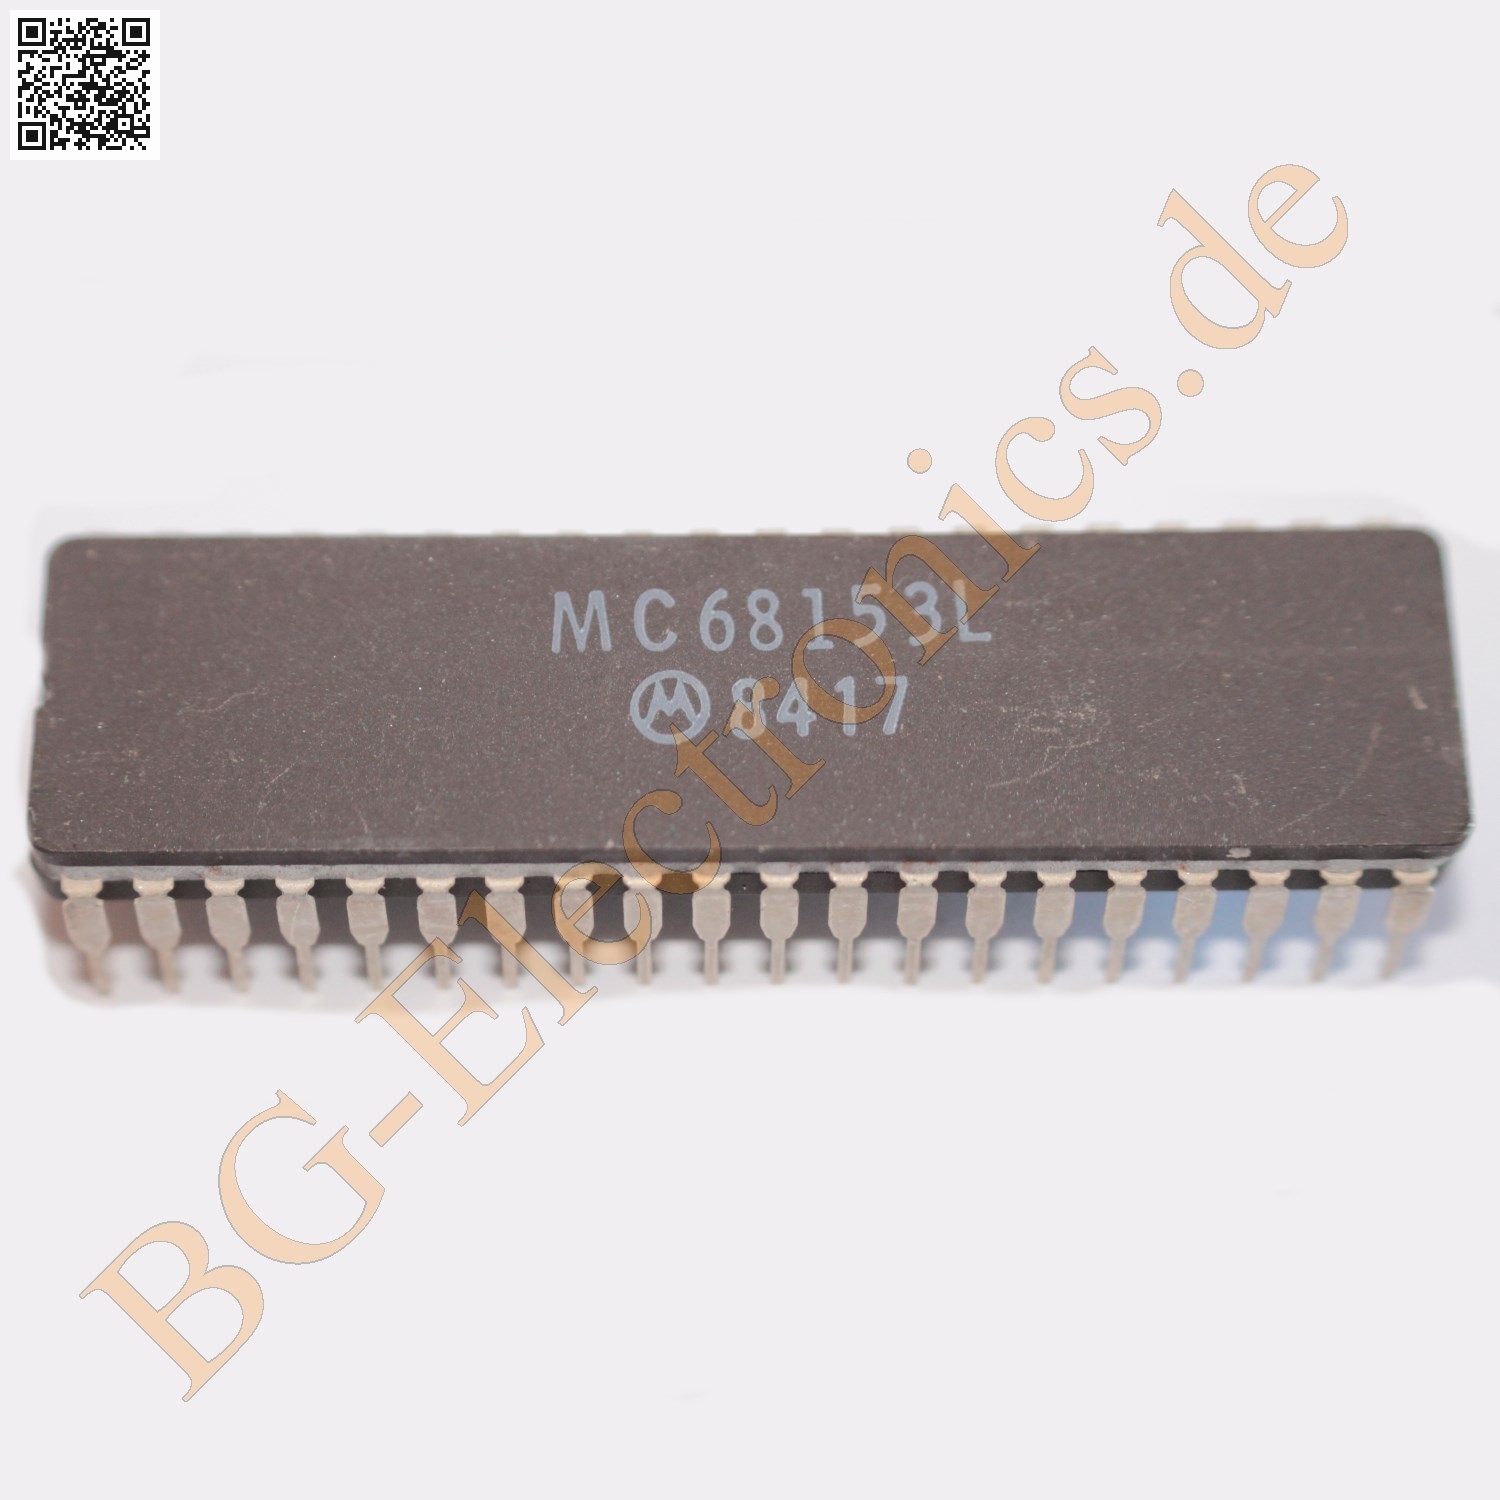 MC68153L